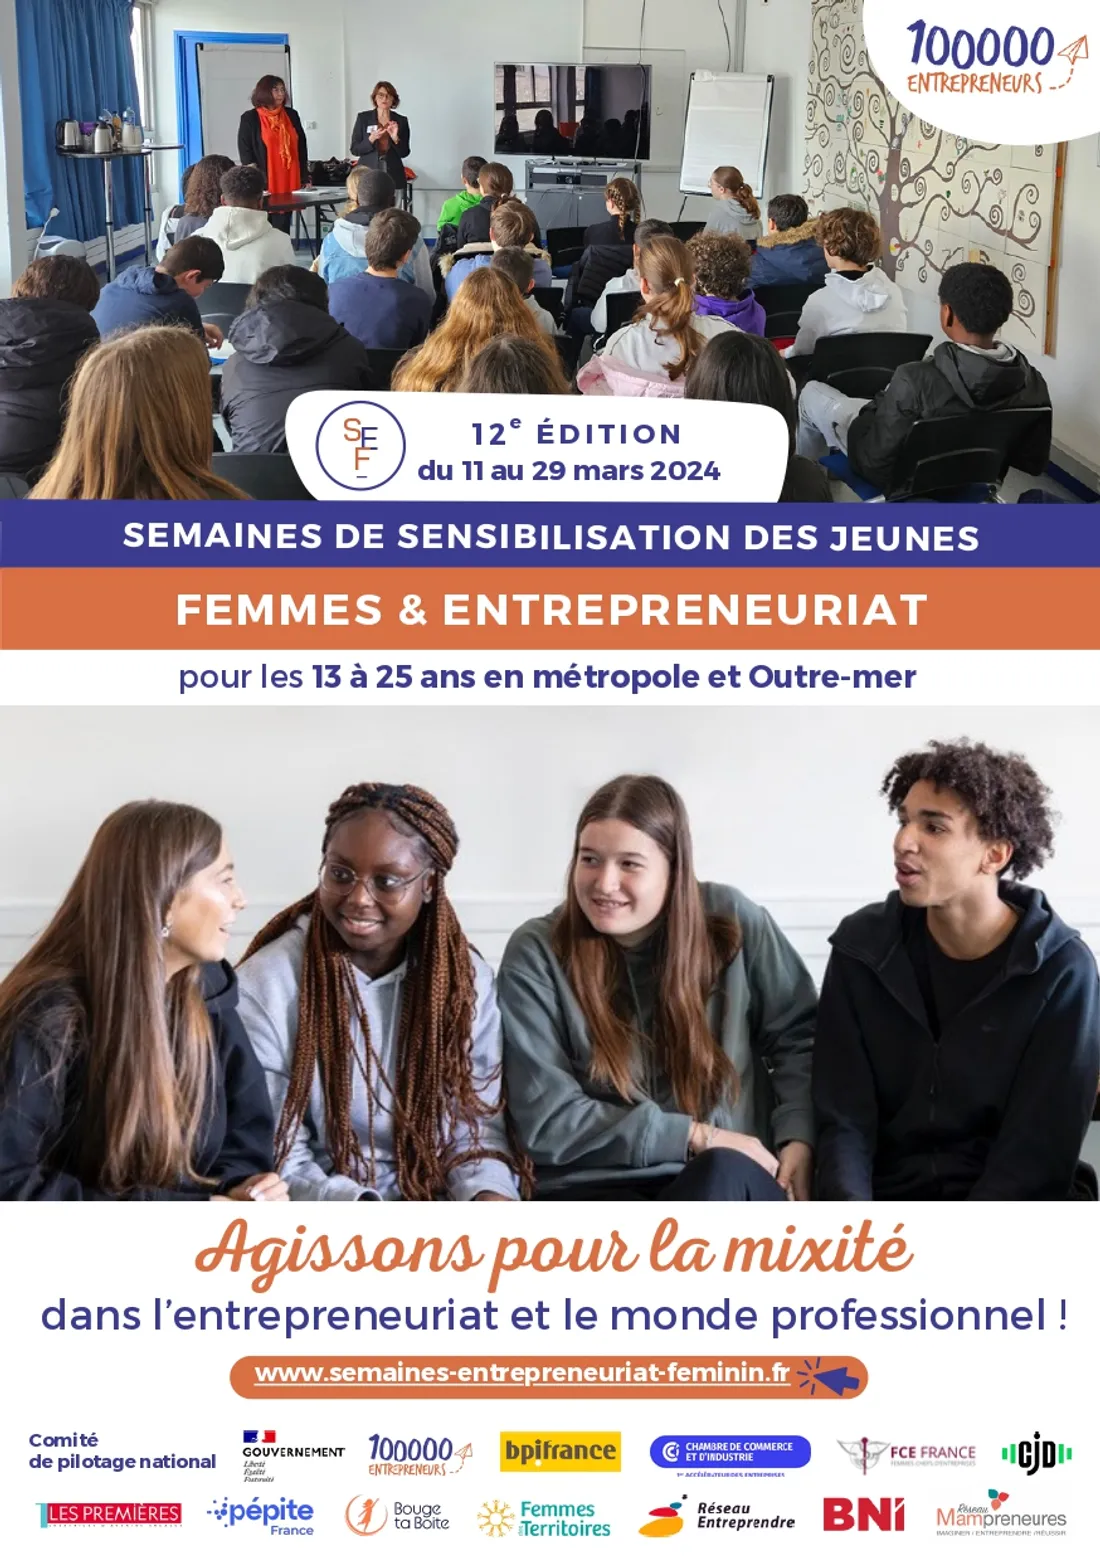 Semaines de sensibilisation des jeunes - Femmes et entrepreneuriat